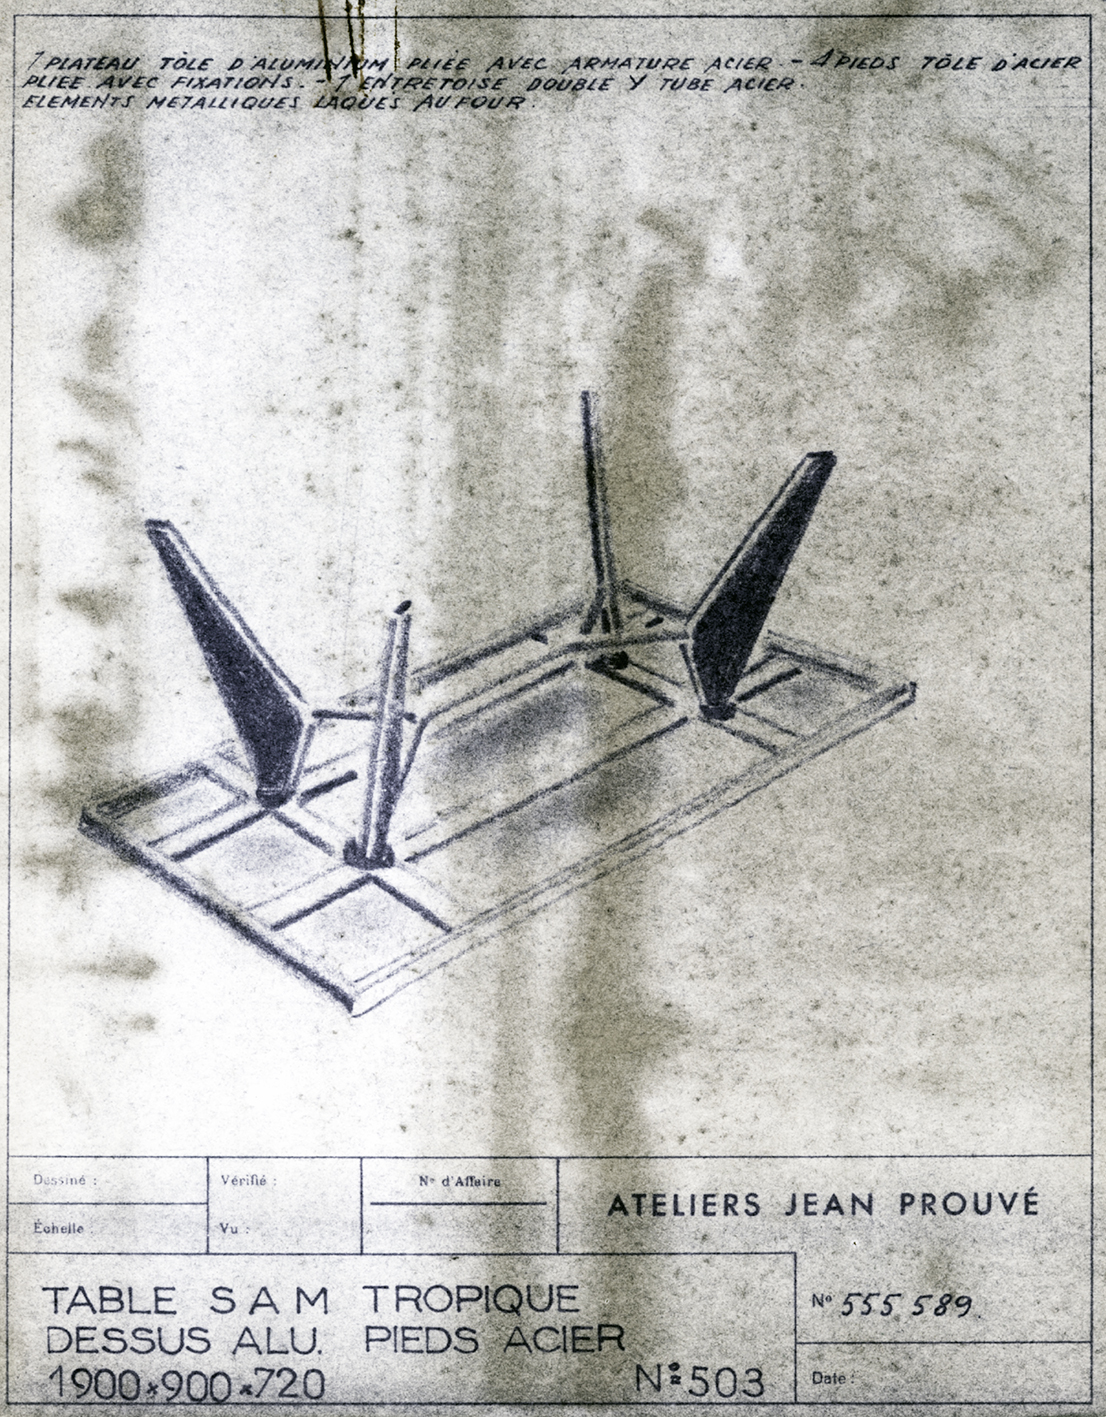 “S.A.M. Tropique no. 503 table”. Ateliers Jean Prouvé descriptive sheet no. 555.589, ca. 1953.